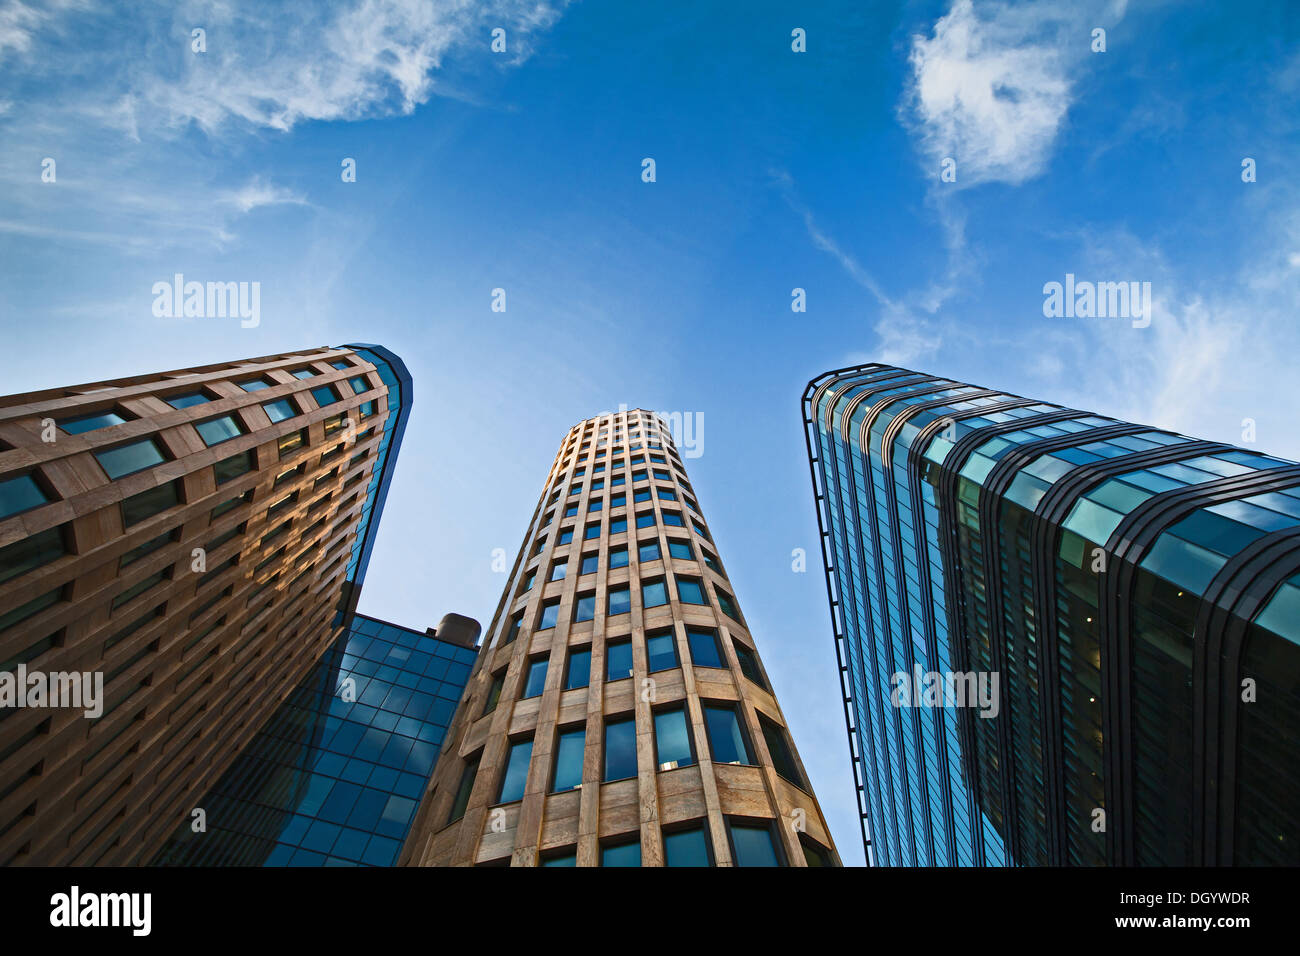 Les immeubles de bureaux sur fond de ciel bleu Banque D'Images